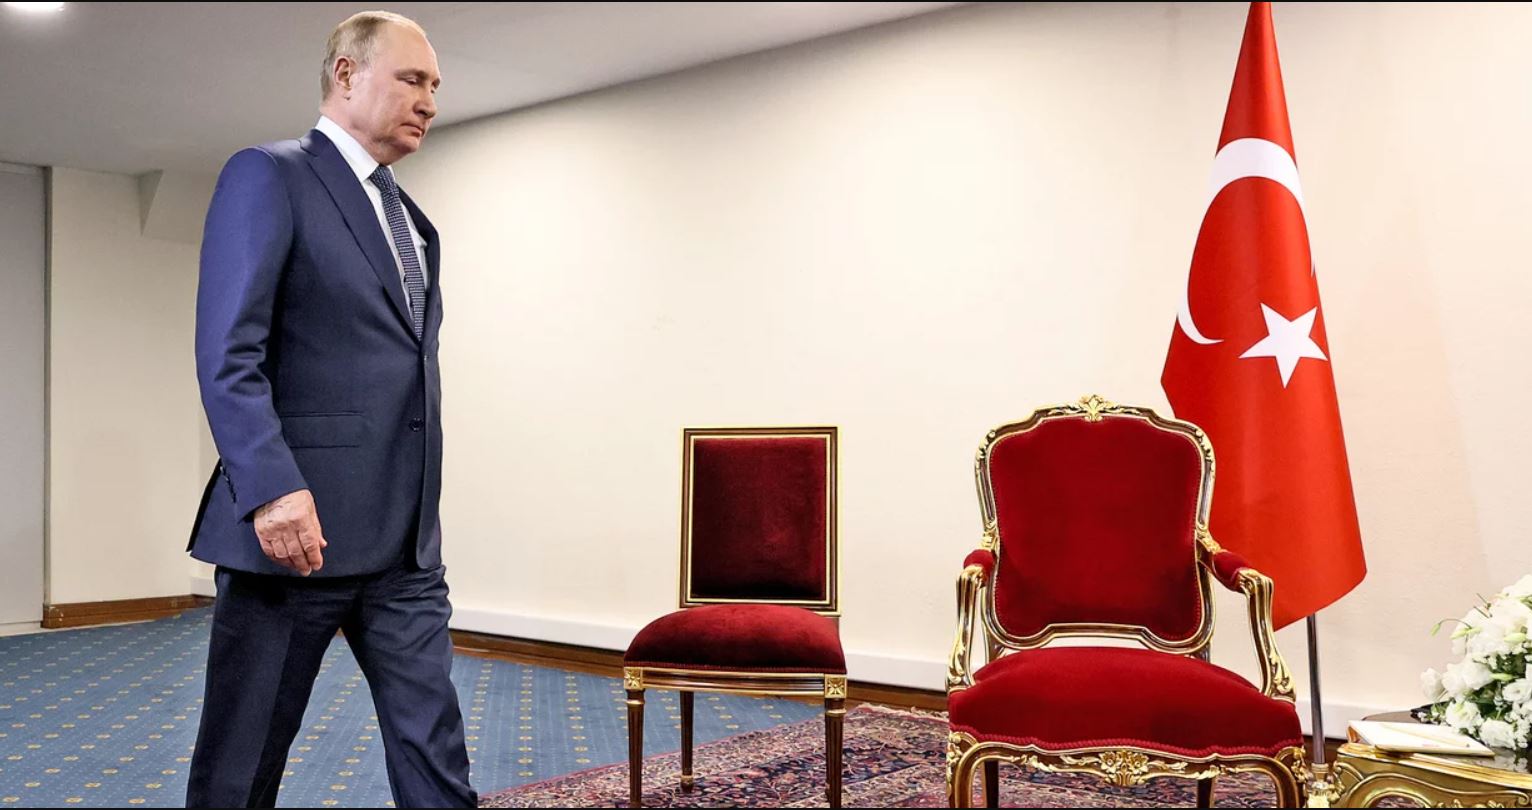 Ο Πούτιν έπαθε... «οφθαλμόν αντί οφθαλμού» - Τον έστησε ο Ερντογάν